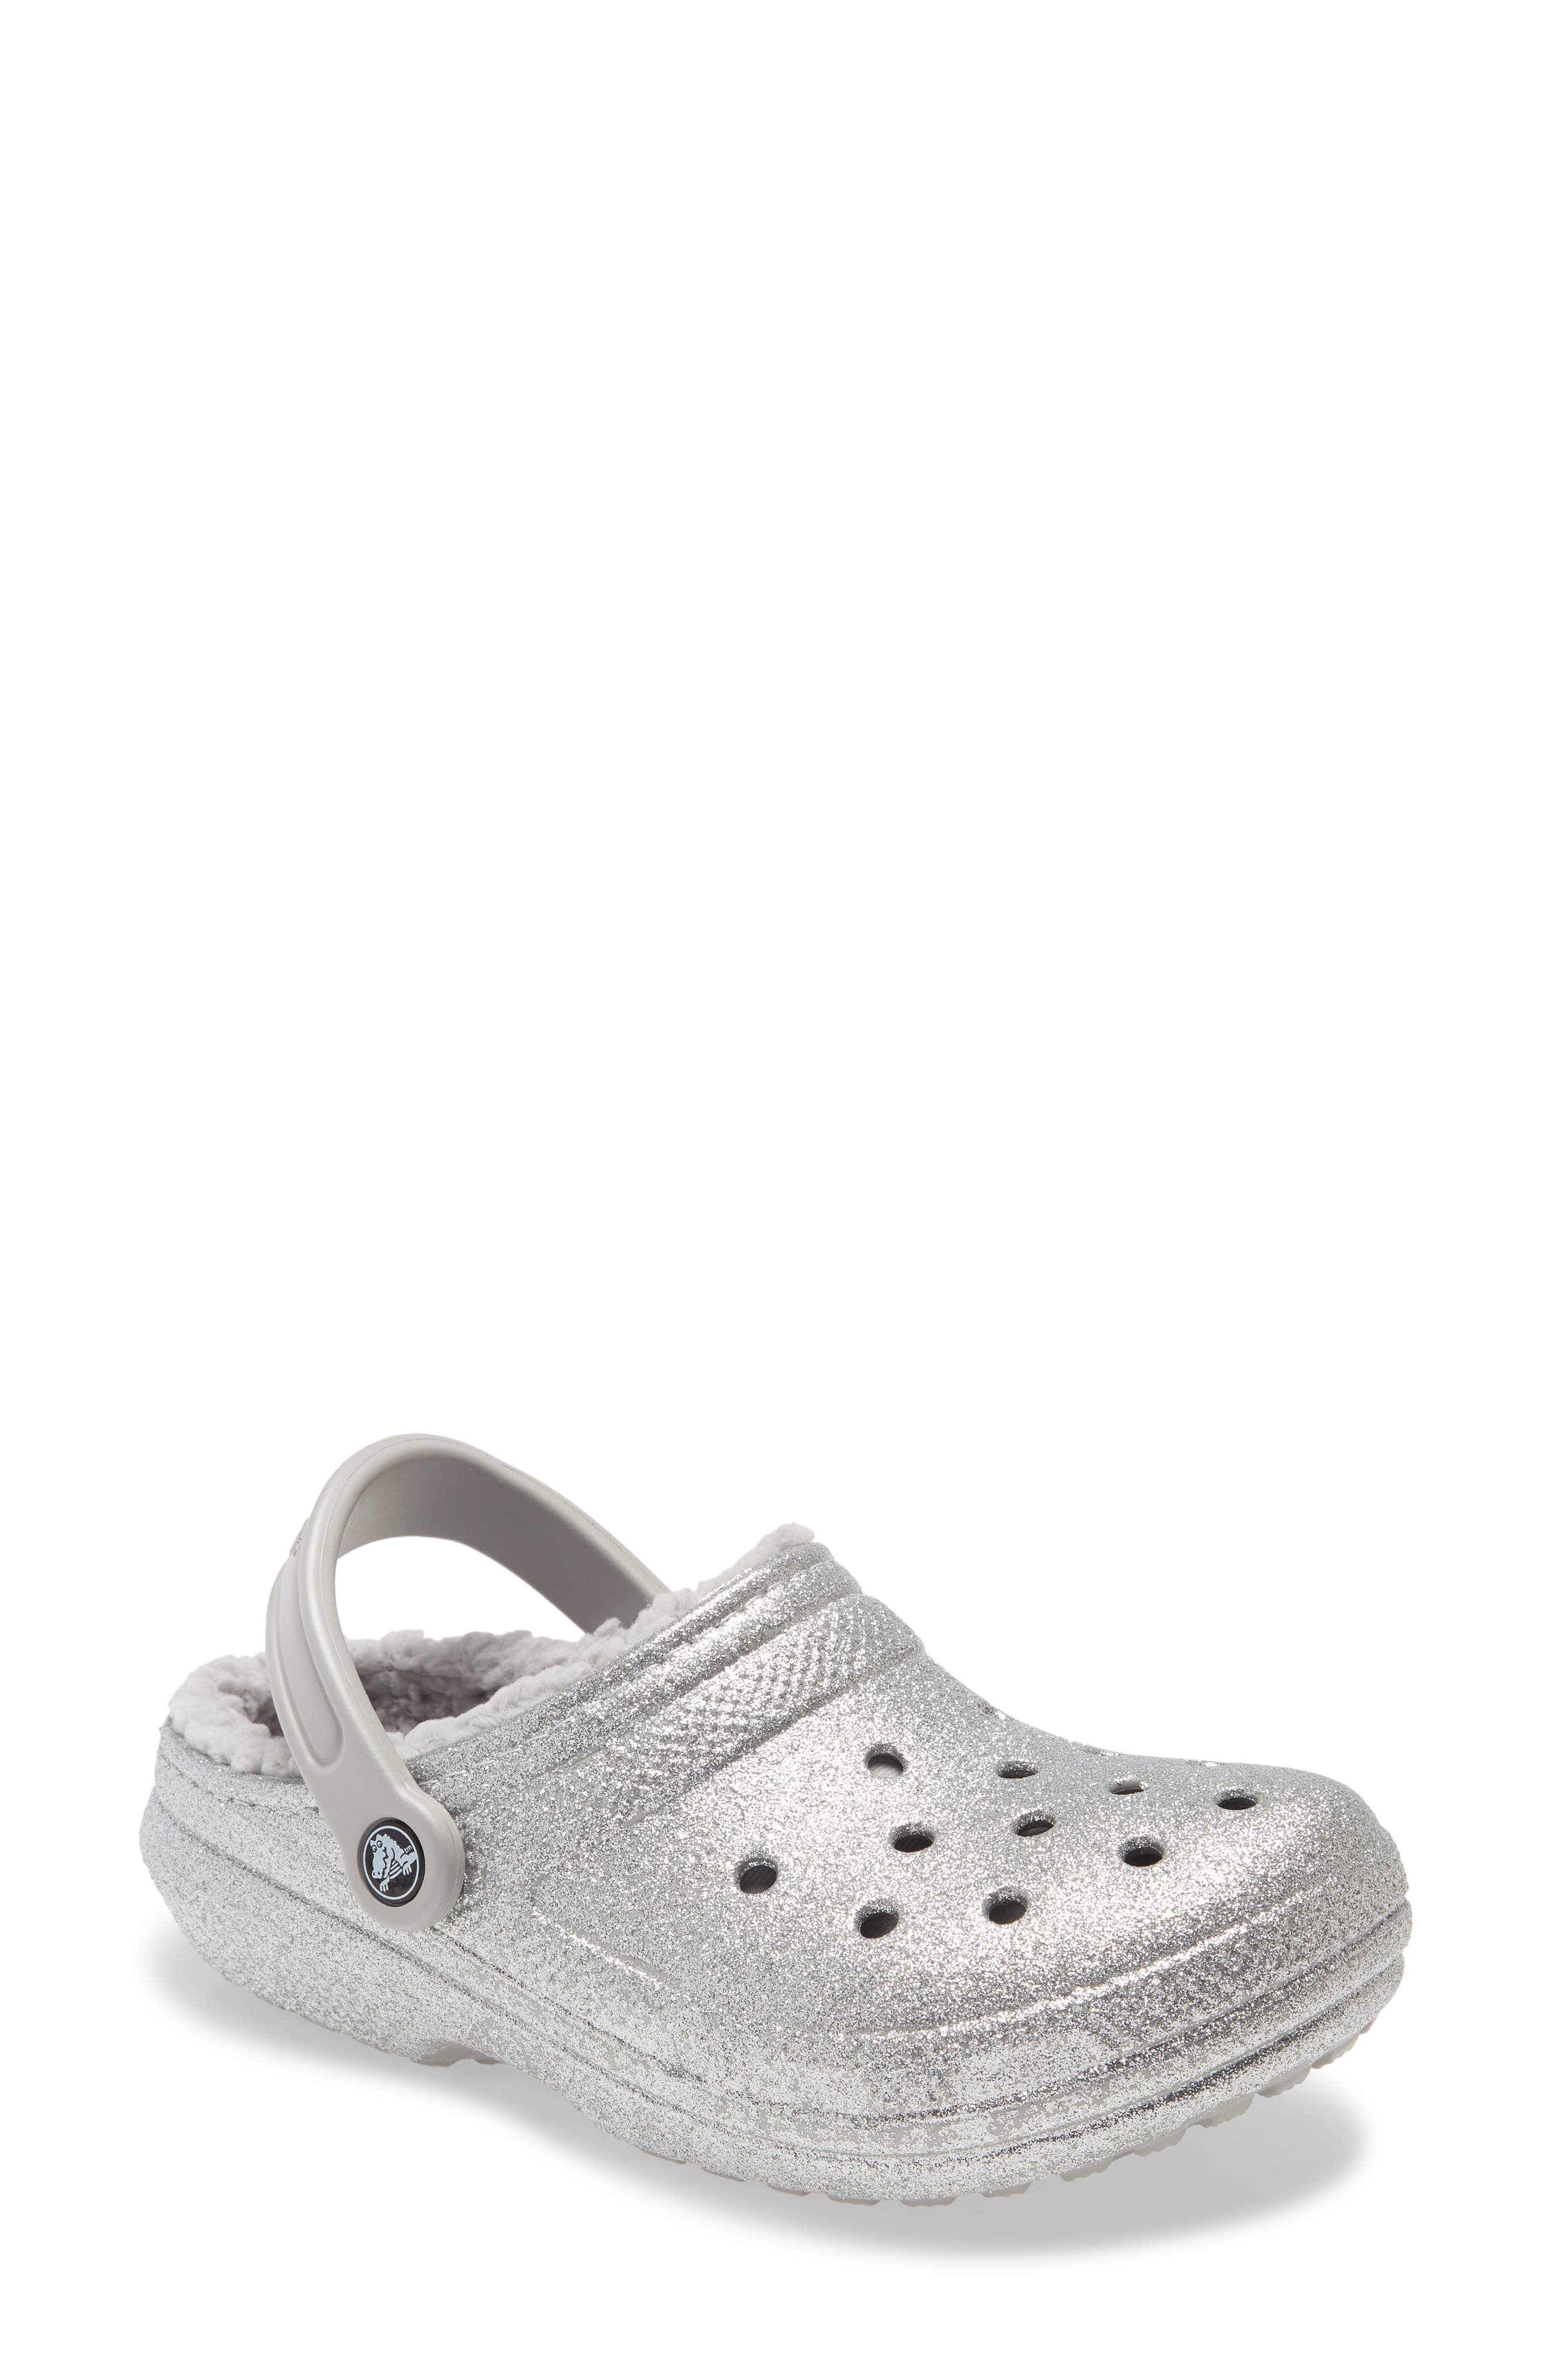 sparkly white crocs